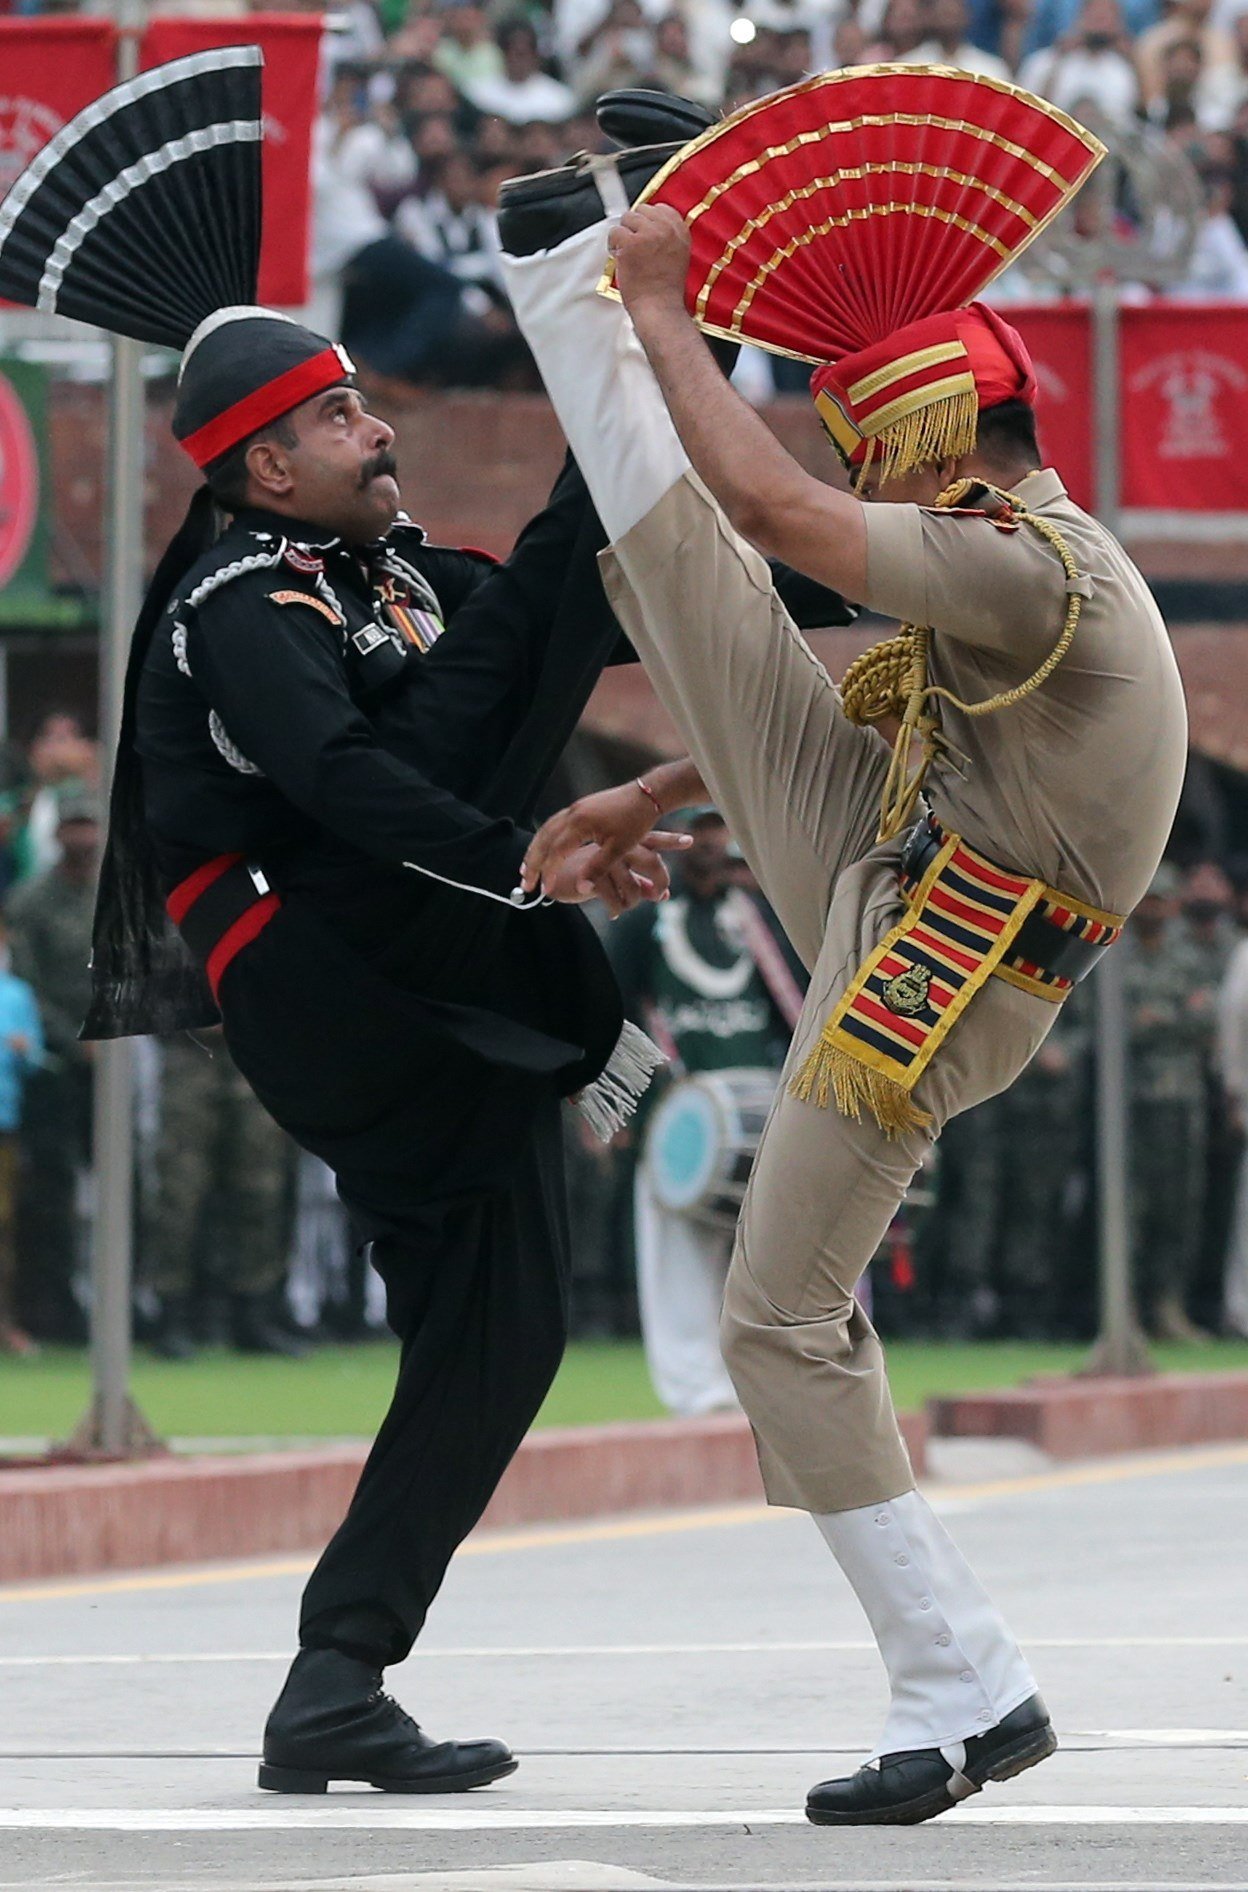 VÍDEO | La colorista cerimònia militar indo-pakistanesa en plena escalada de tensió